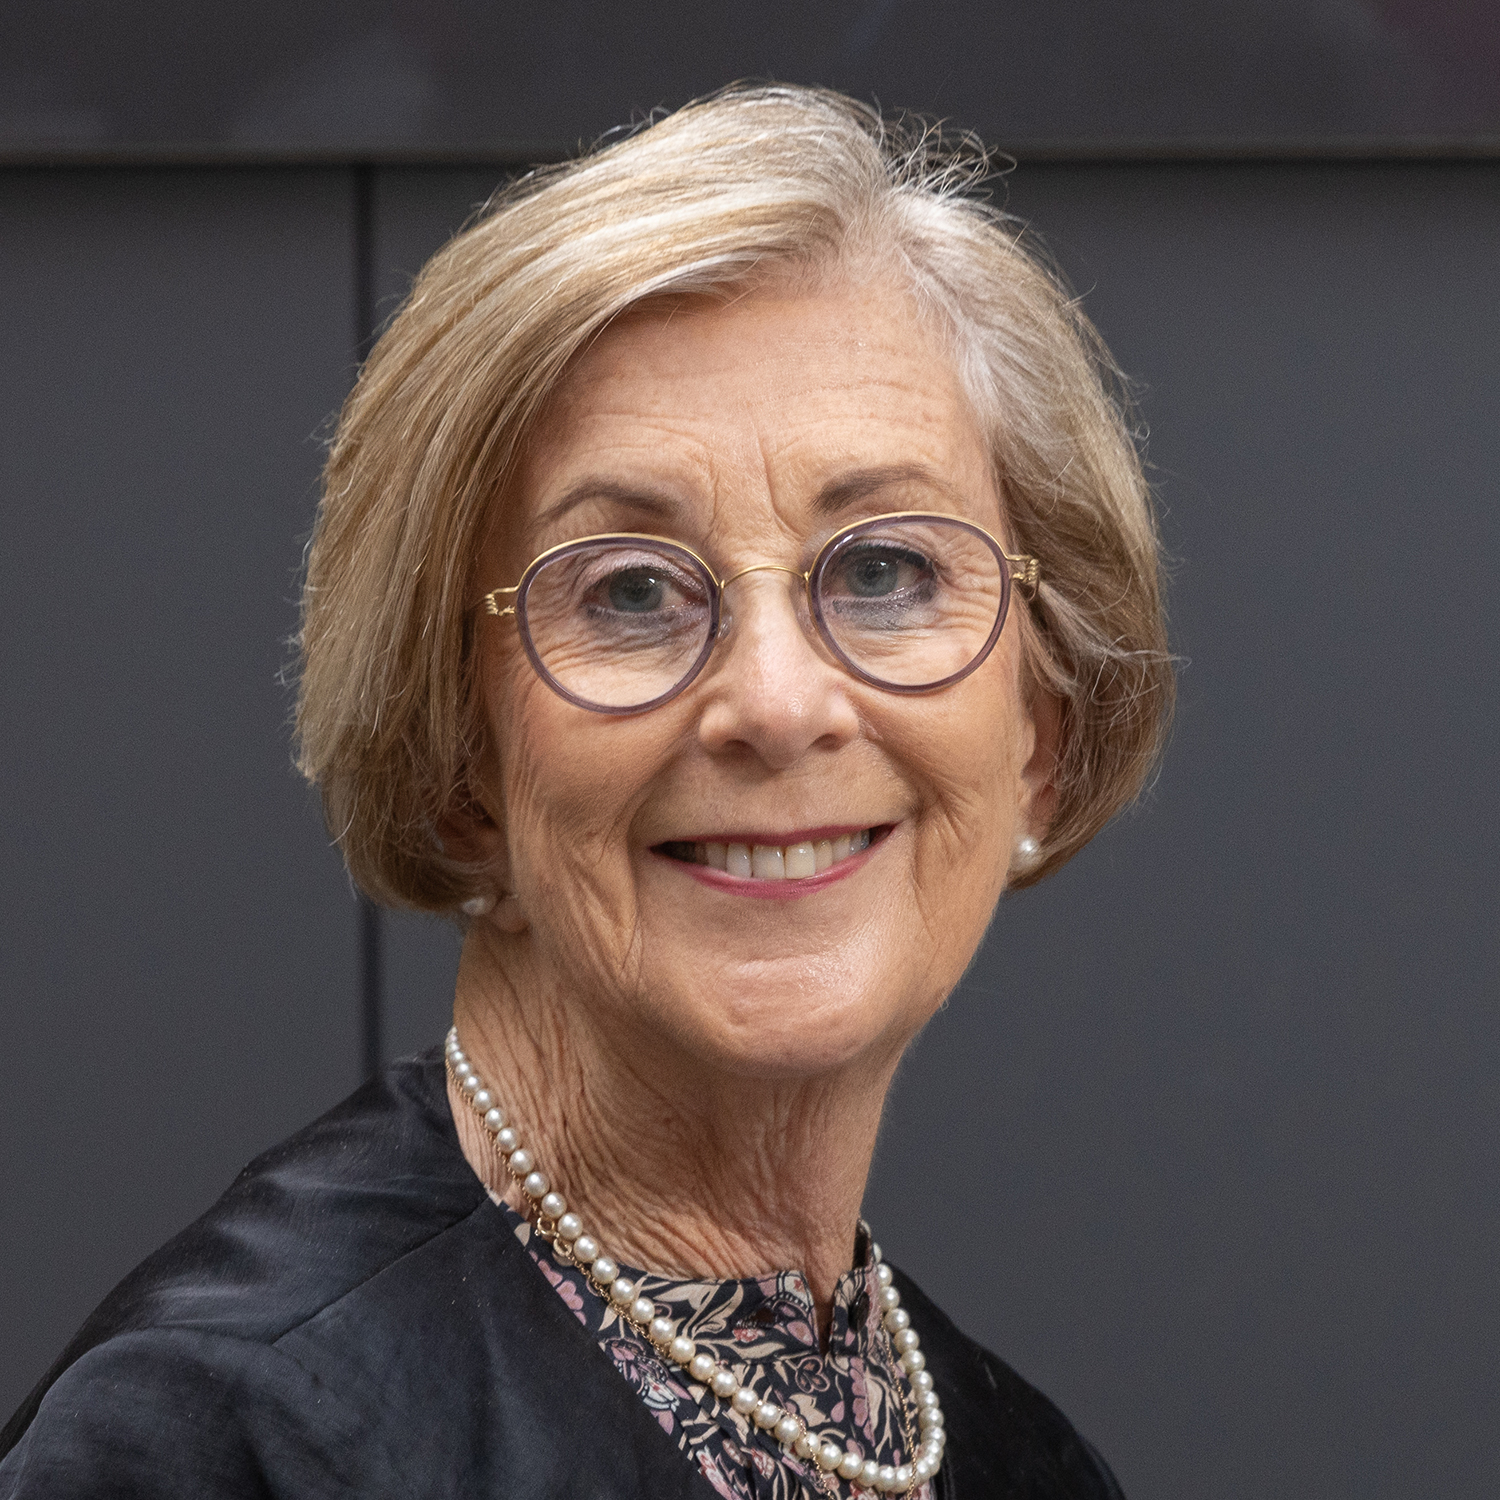 The Chancellor, The Hon. Patricia Forsythe AM